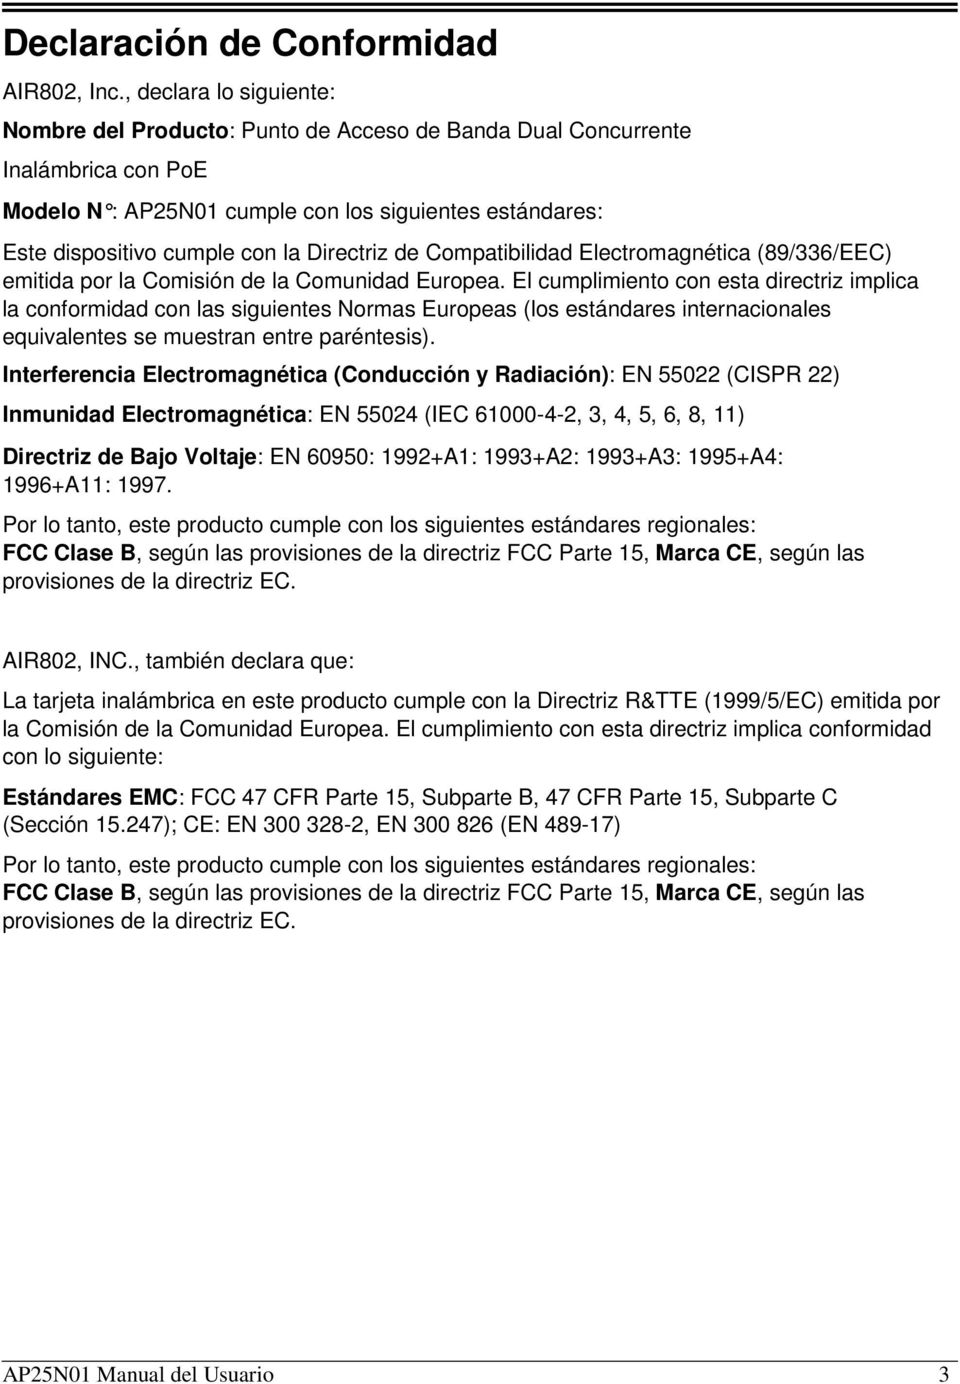 Directriz de Compatibilidad Electromagnética (89/336/EEC) emitida por la Comisión de la Comunidad Europea.